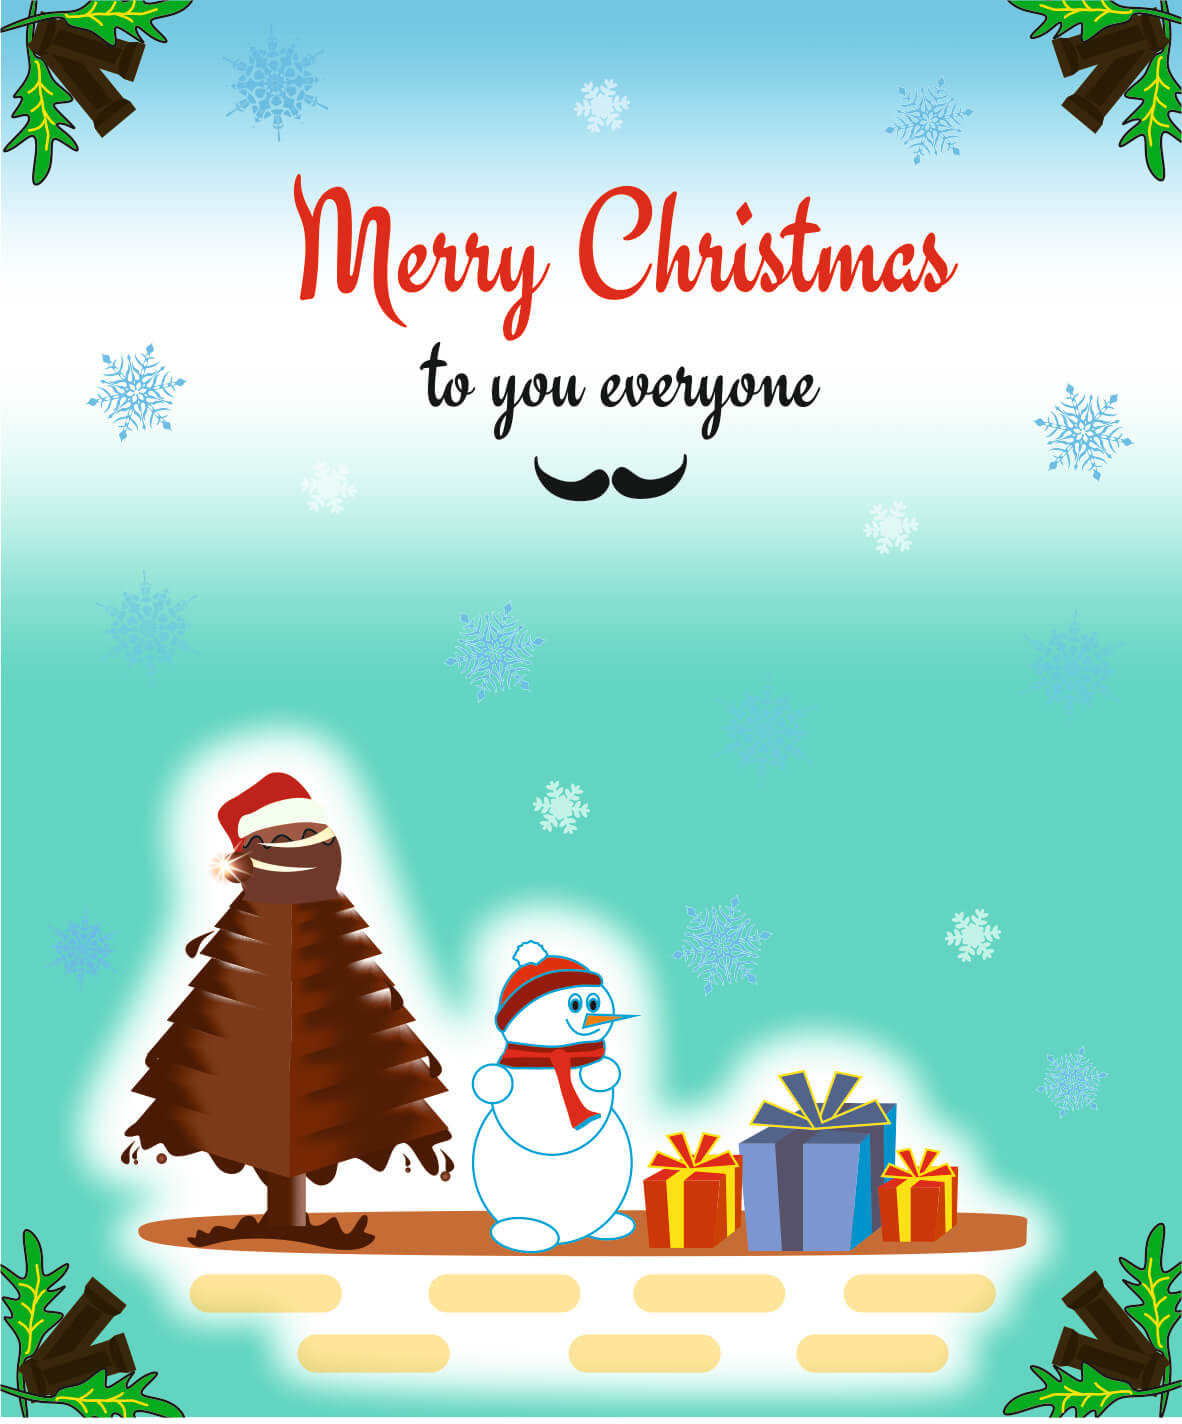 Christmas | eGreetings Portal